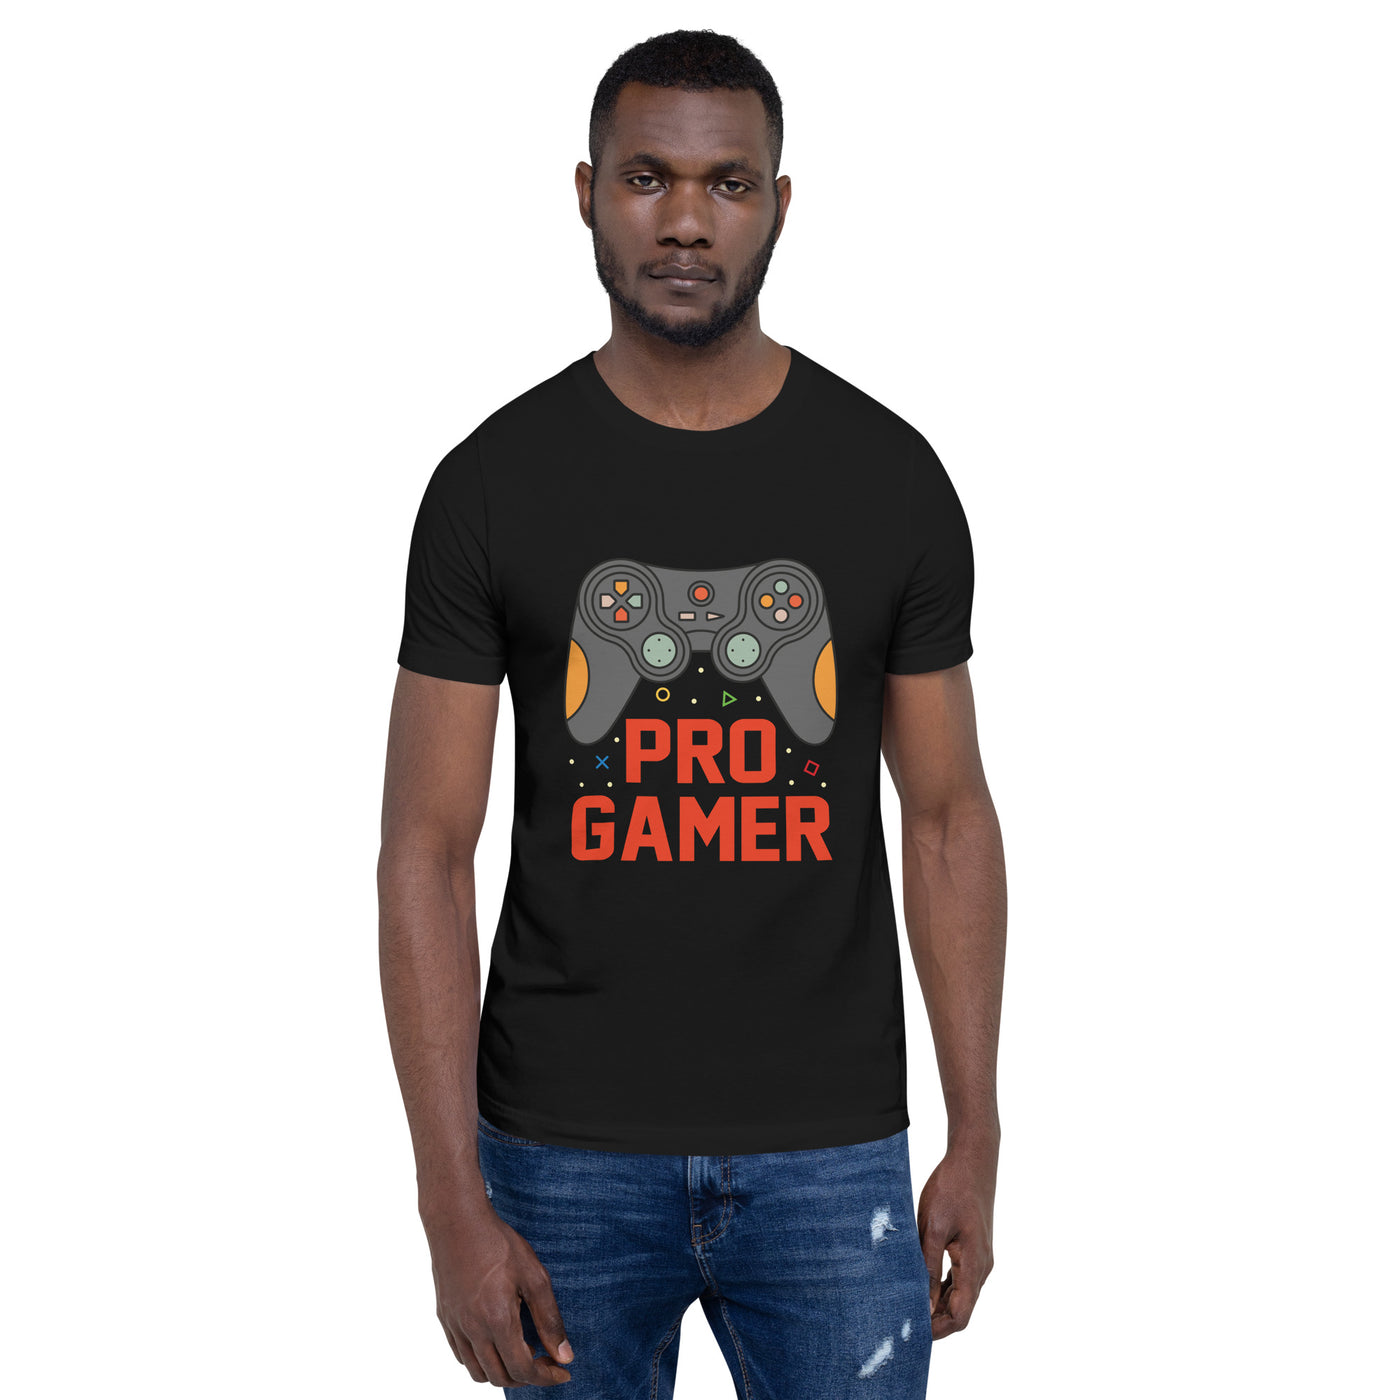 Pro-Gamer - Unisex t-shirt